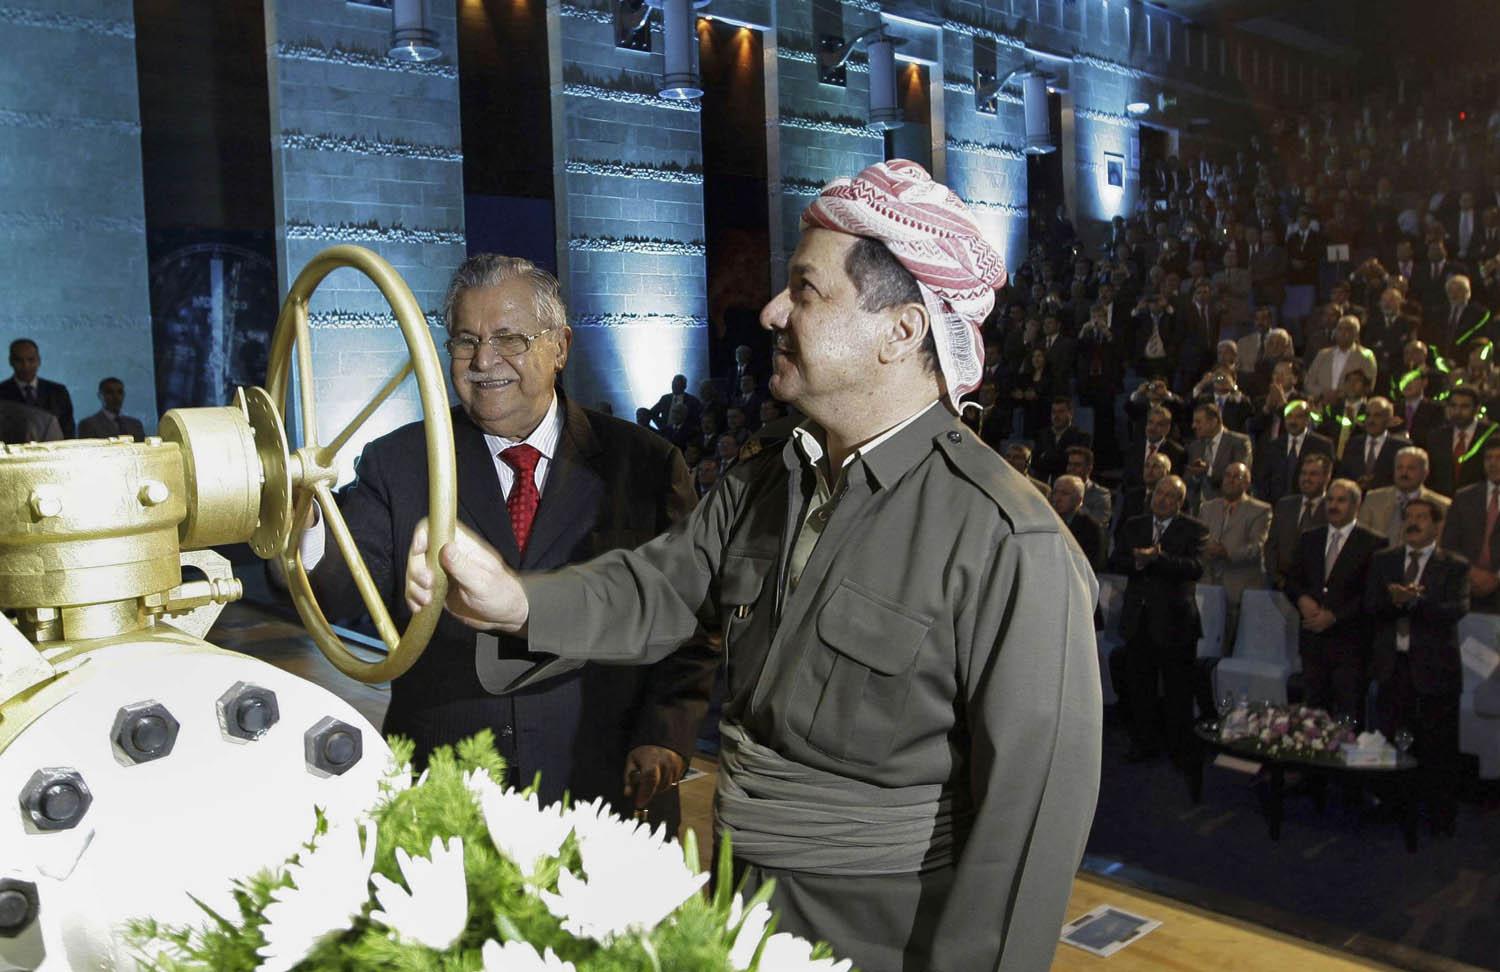 الرئيس العراقي الراحل جلال طالباني مع الرئيس الكردي السابق مسعود بارزاني في تدشين مشروع نفطي عام 2009 في أربيل